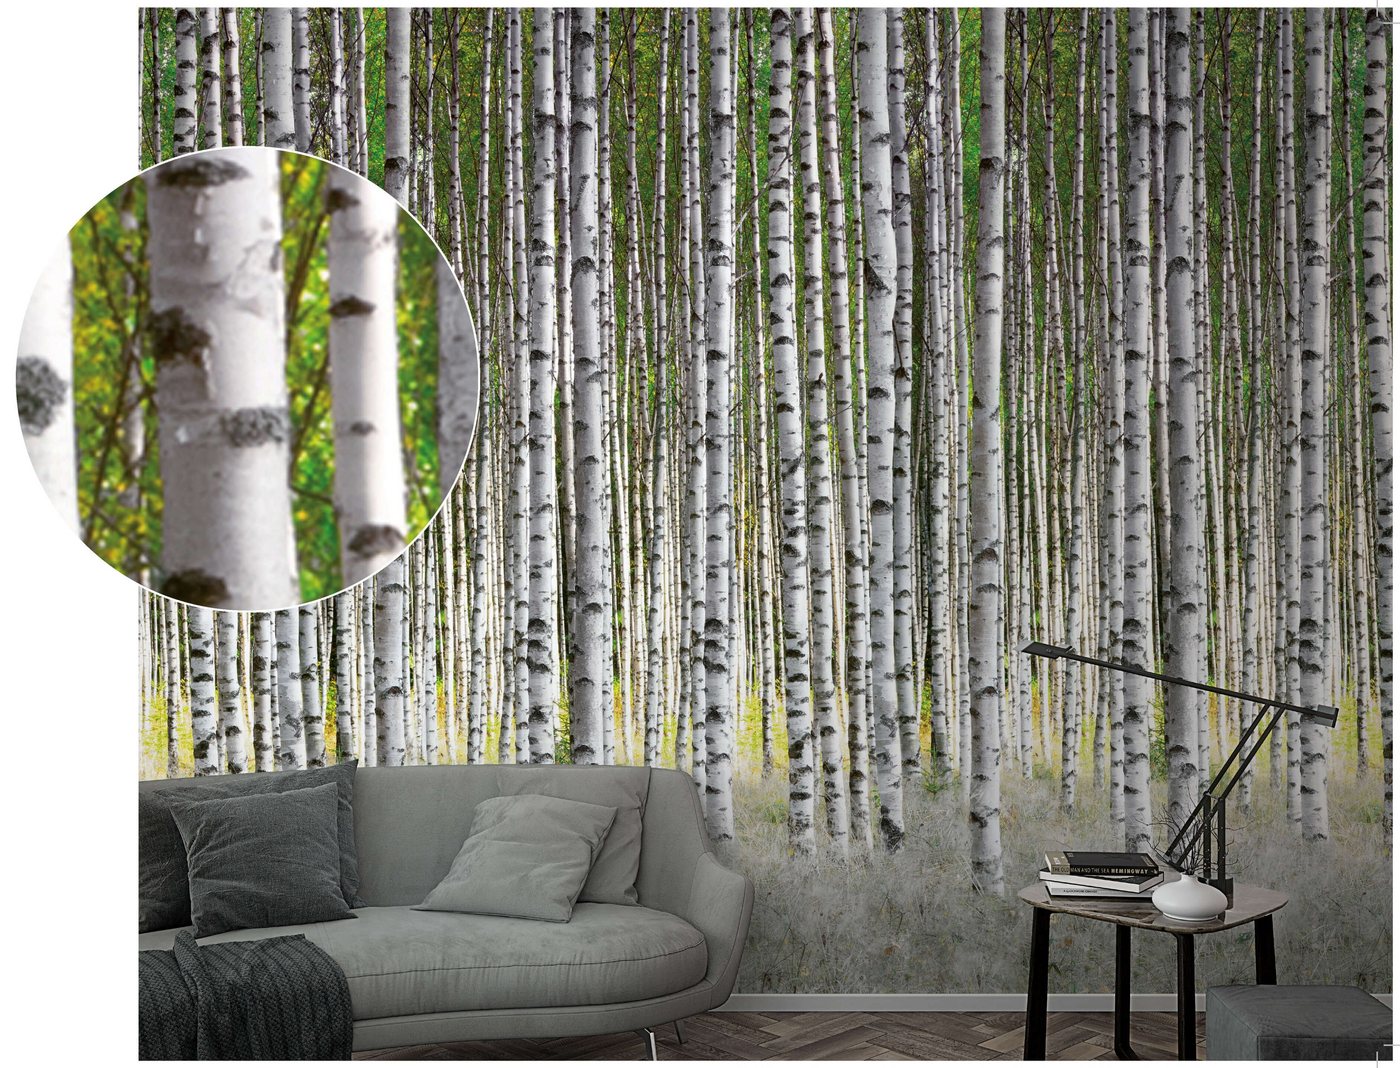 Newroom Vliestapete, [ 2,7 x 1,59m ] großzügiges Motiv - kein wiederkehrendes Muster - nahtlos große Flächen möglich - Fototapete Wandbild Brike Baum Wald Made in Germany von Newroom